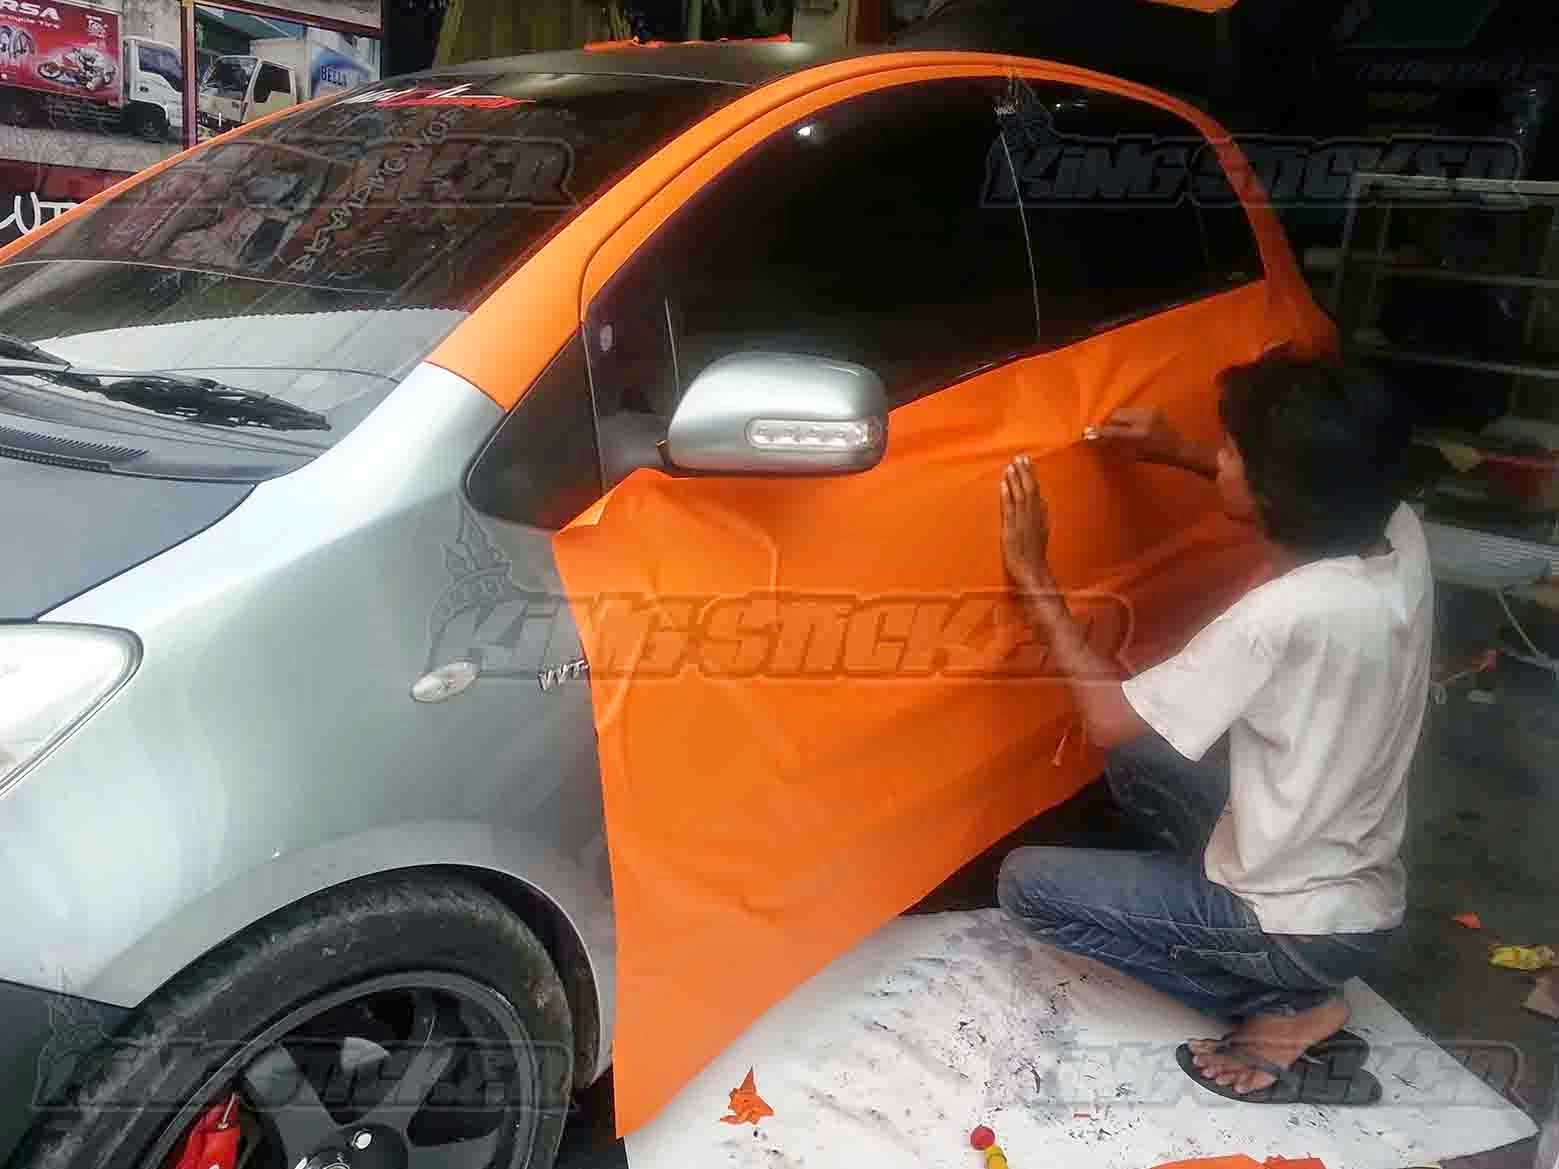 Foto Mobil Sedan Orange Terbaru Dan Terkeren Modifikasi Mobil Sedan